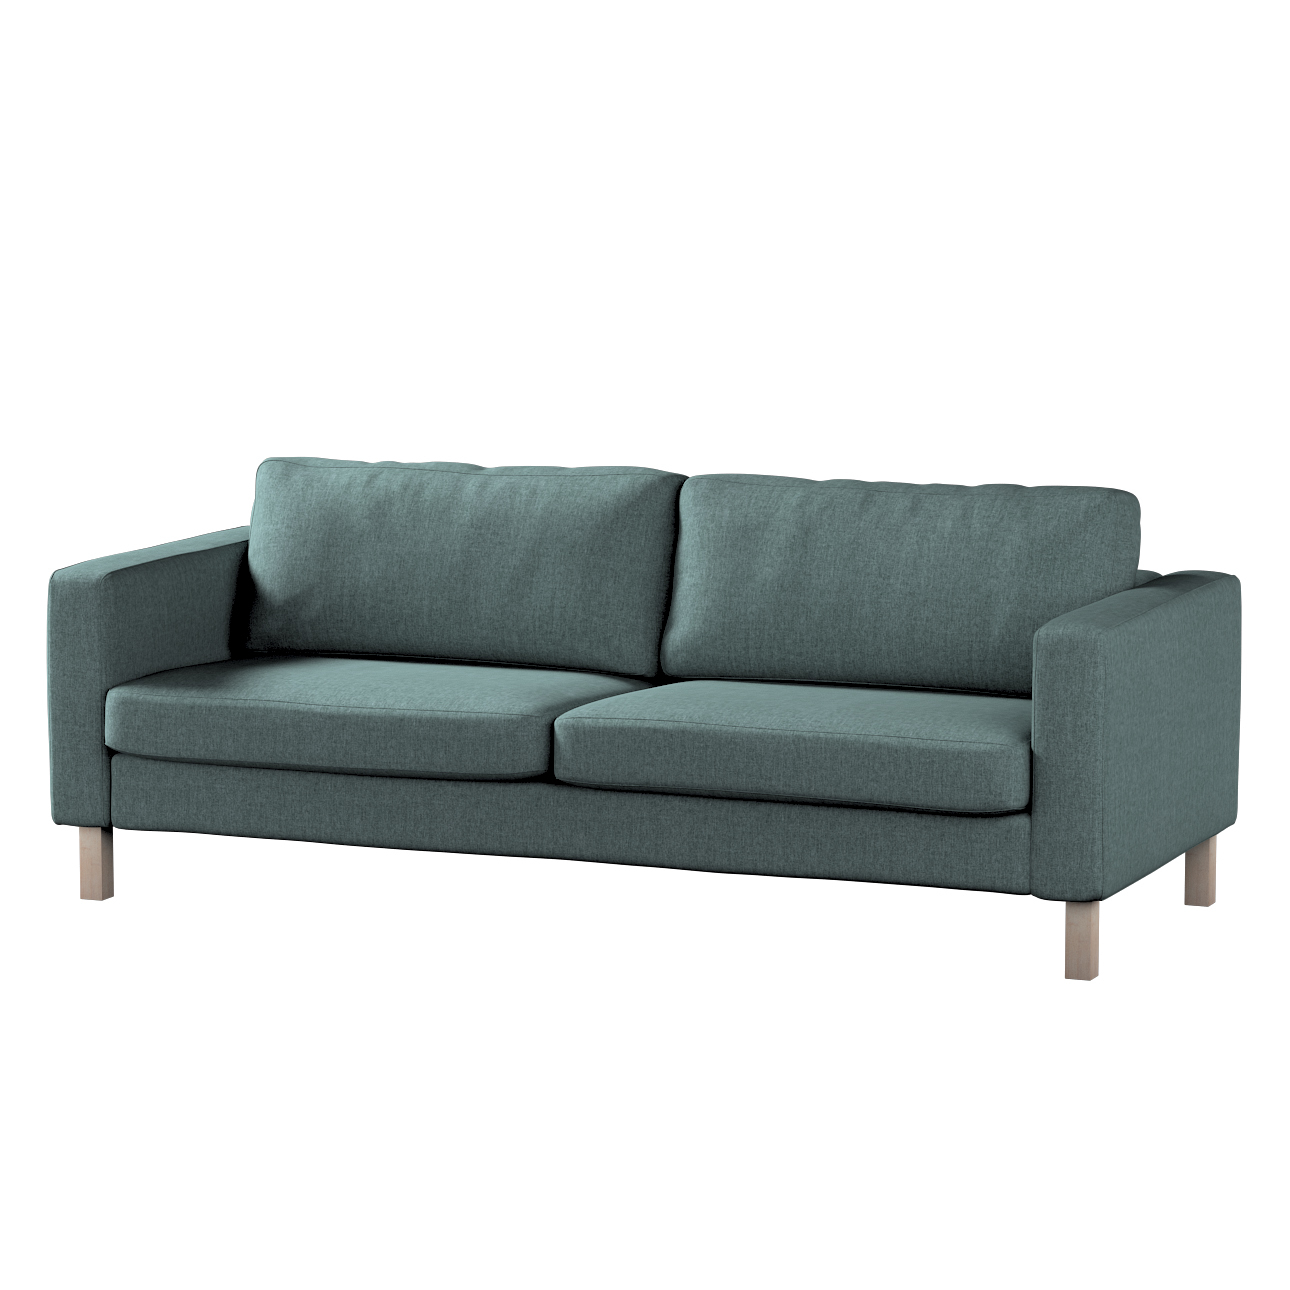 Bezug für Karlstad 3-Sitzer Sofa nicht ausklappbar, kurz, grau- blau, Bezug günstig online kaufen